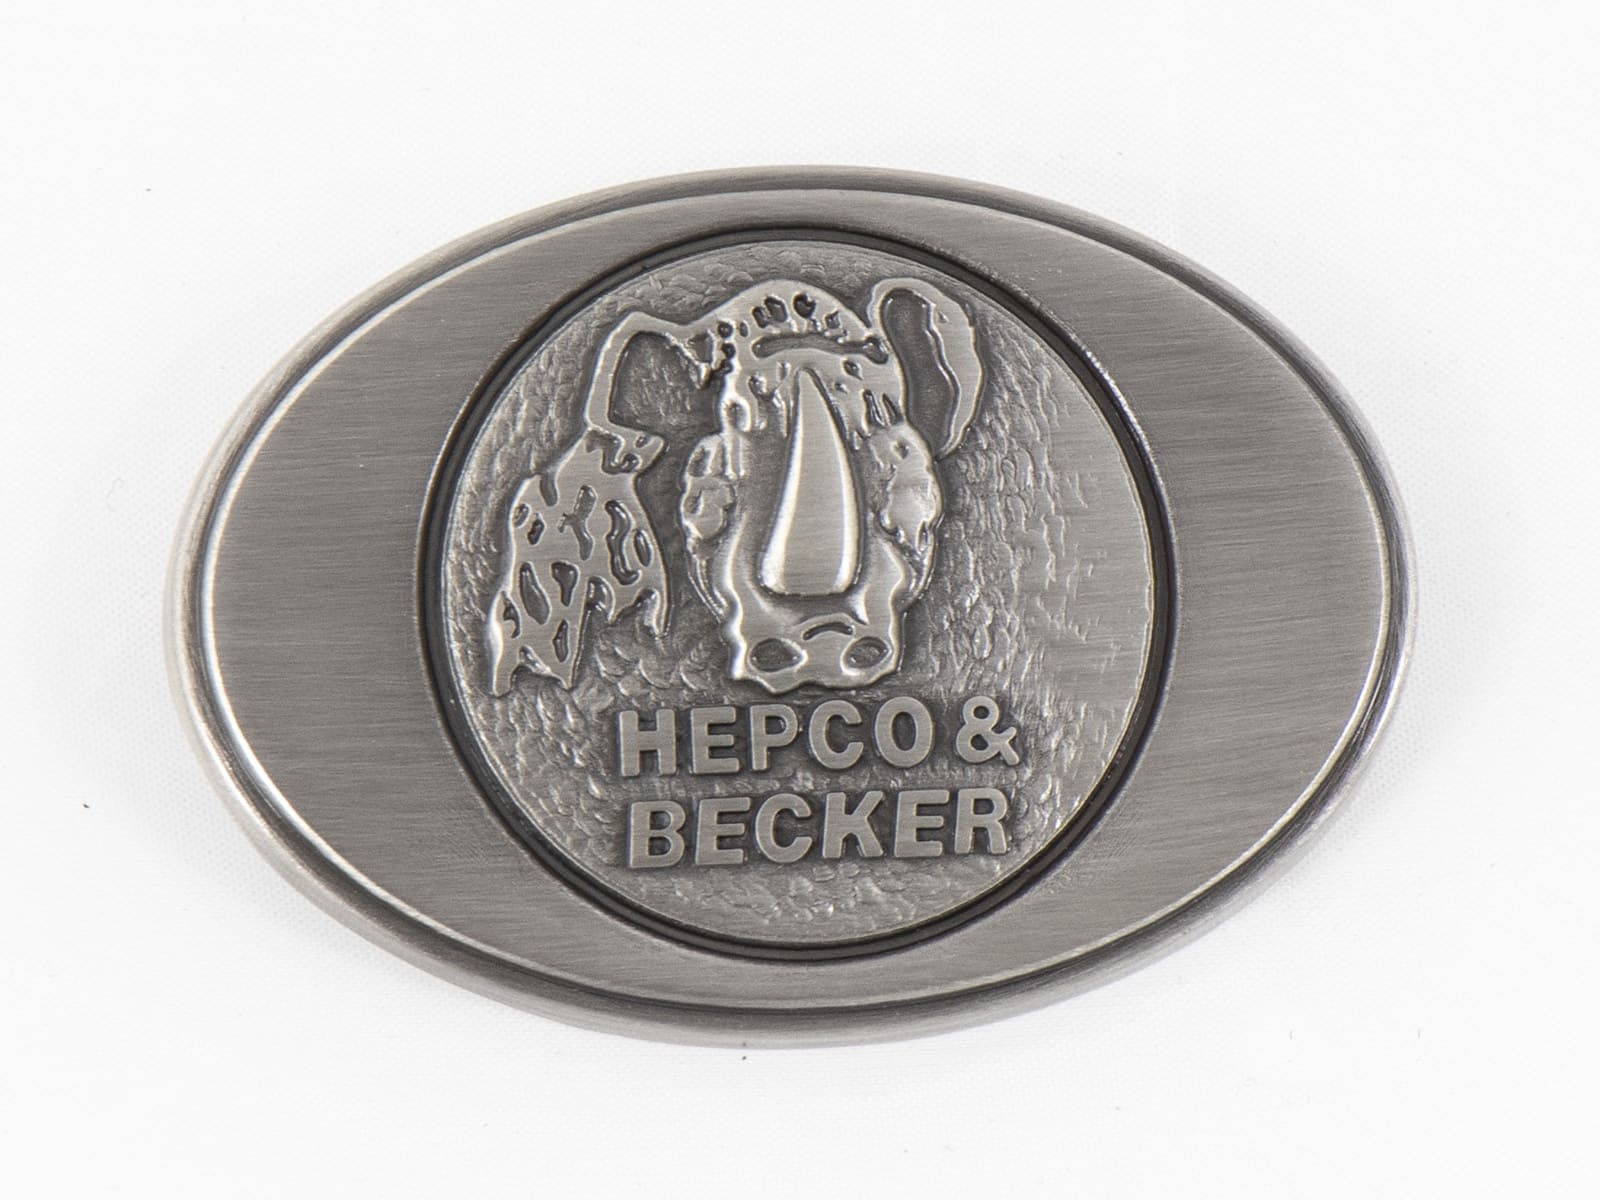 Metallemblem für Hepco&Becker Ledertaschen Liberty/Nevada/Buffalo/Ivory/Rugged